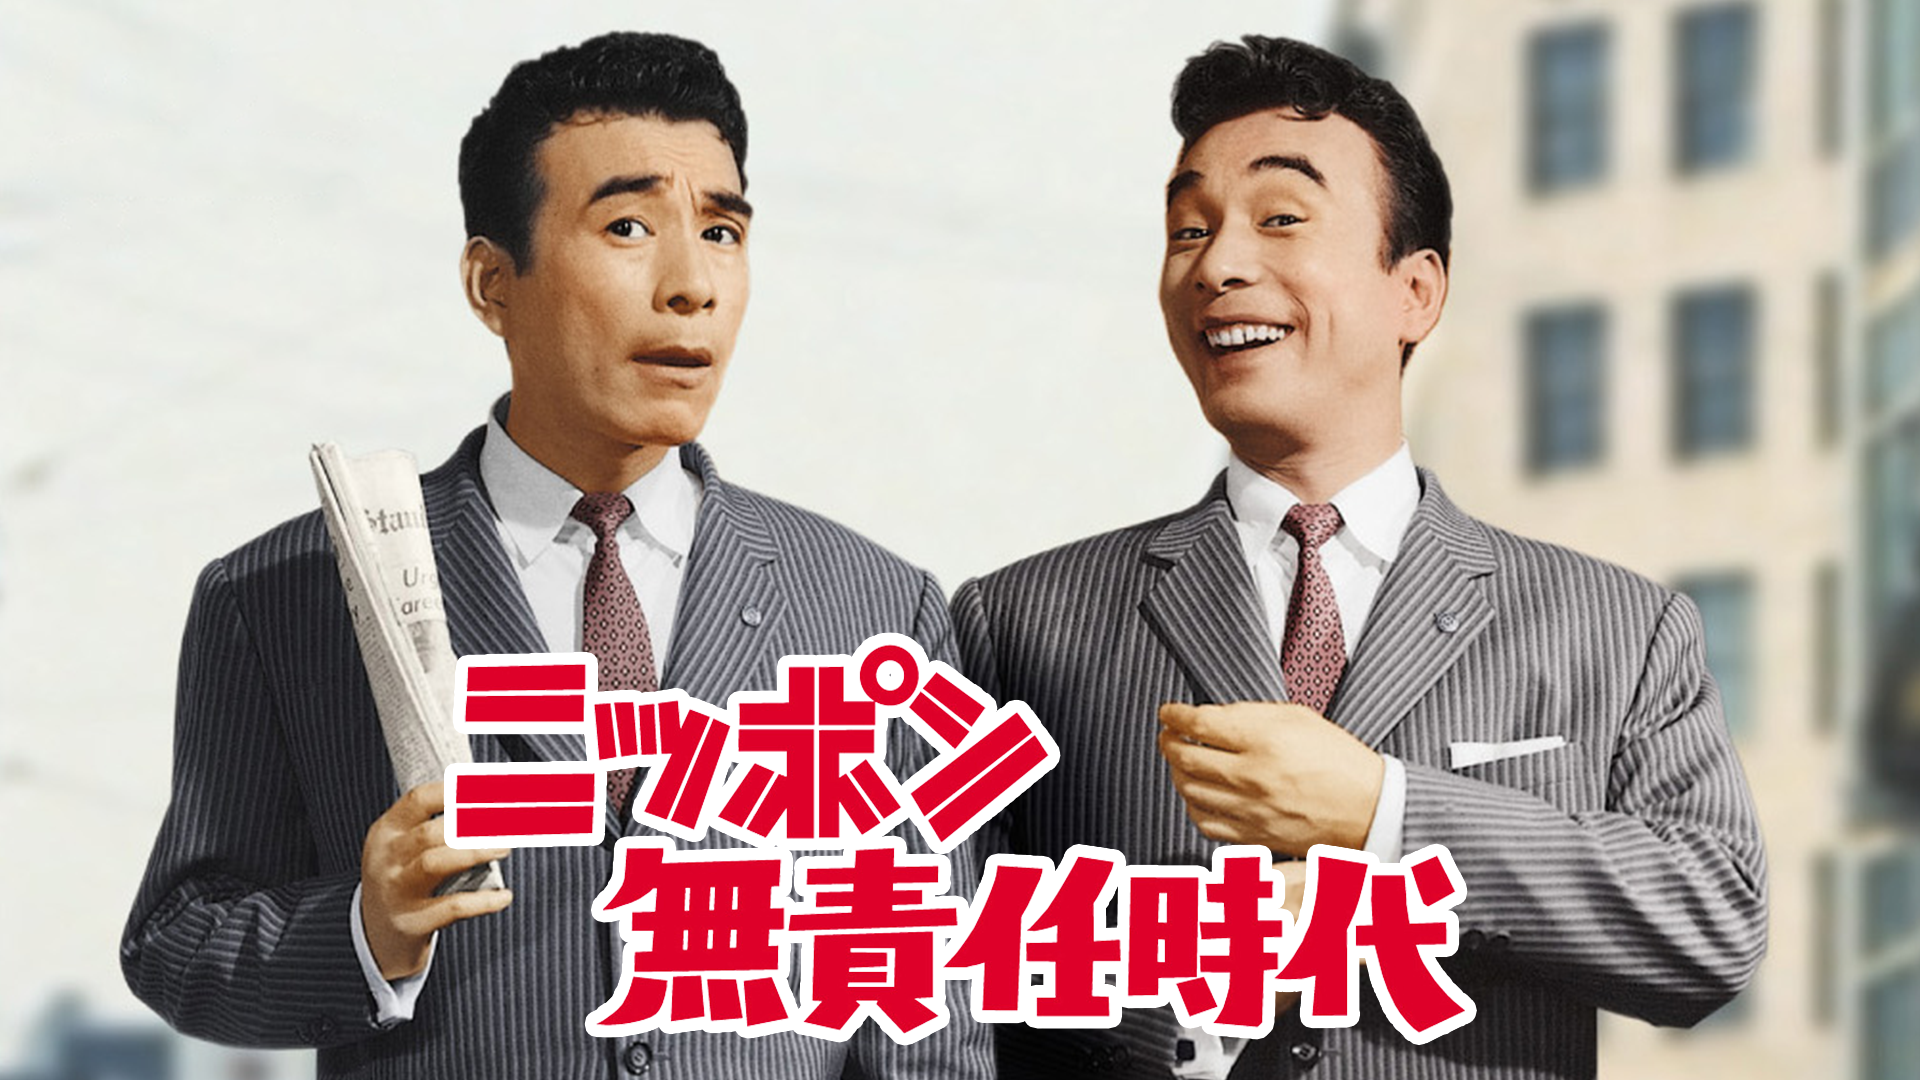 ニッポン無責任時代(邦画 / 1962) - 動画配信 | U-NEXT 31日間無料 